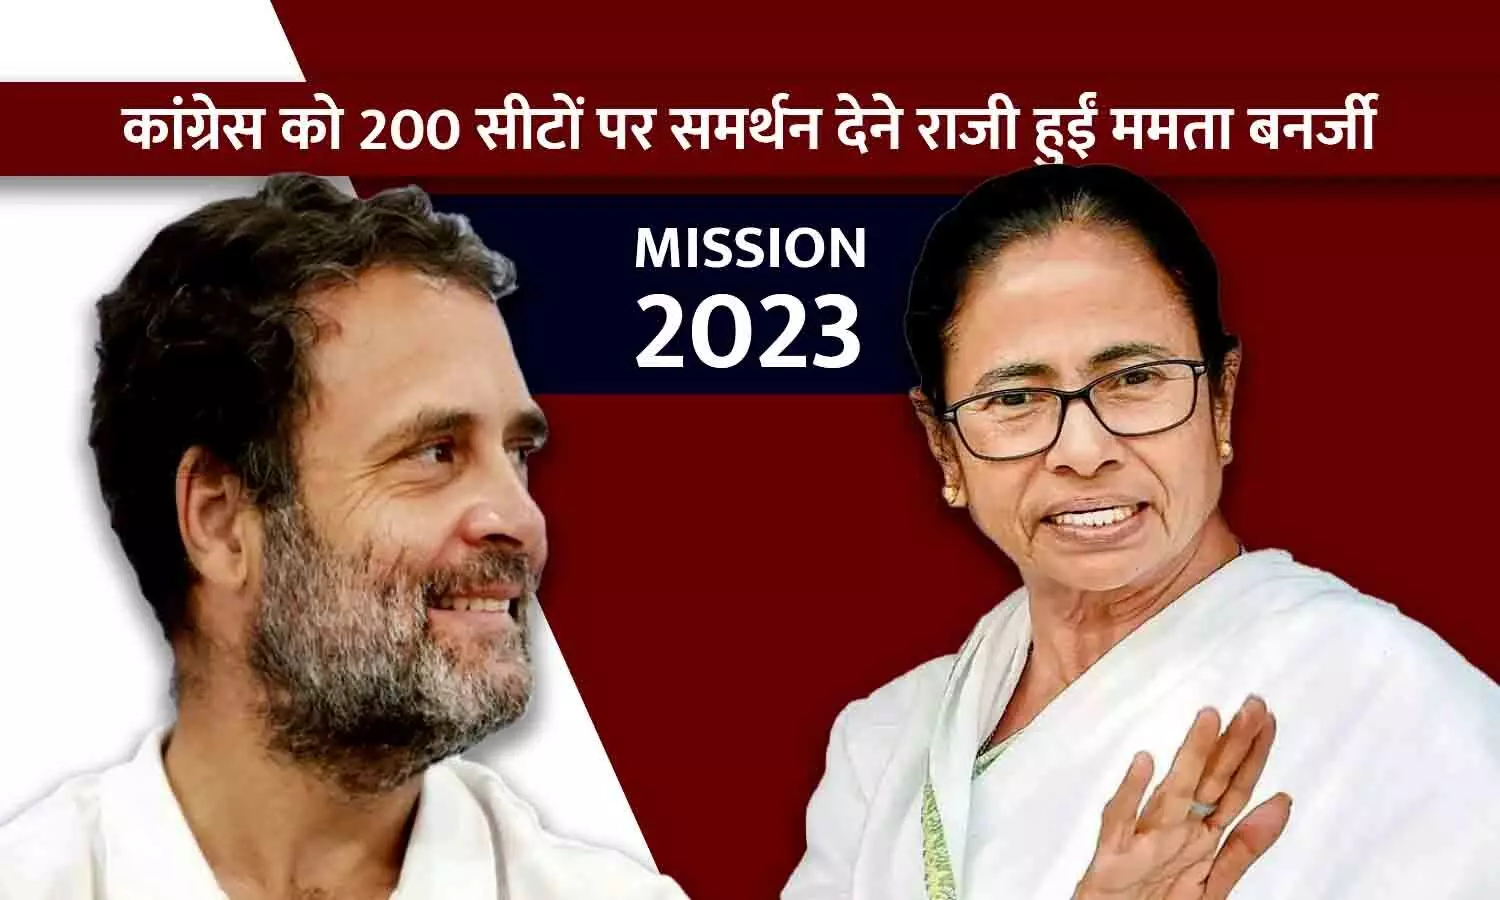 मिशन 2024: ममता बनर्जी के आम चुनाव फॉर्मूले को कांग्रेस ने ठुकराया, चौधरी ने कहा- हमेशा कांग्रेस को नीचा दिखाती रहीं, हम बंगाल में भी लड़ेंगे